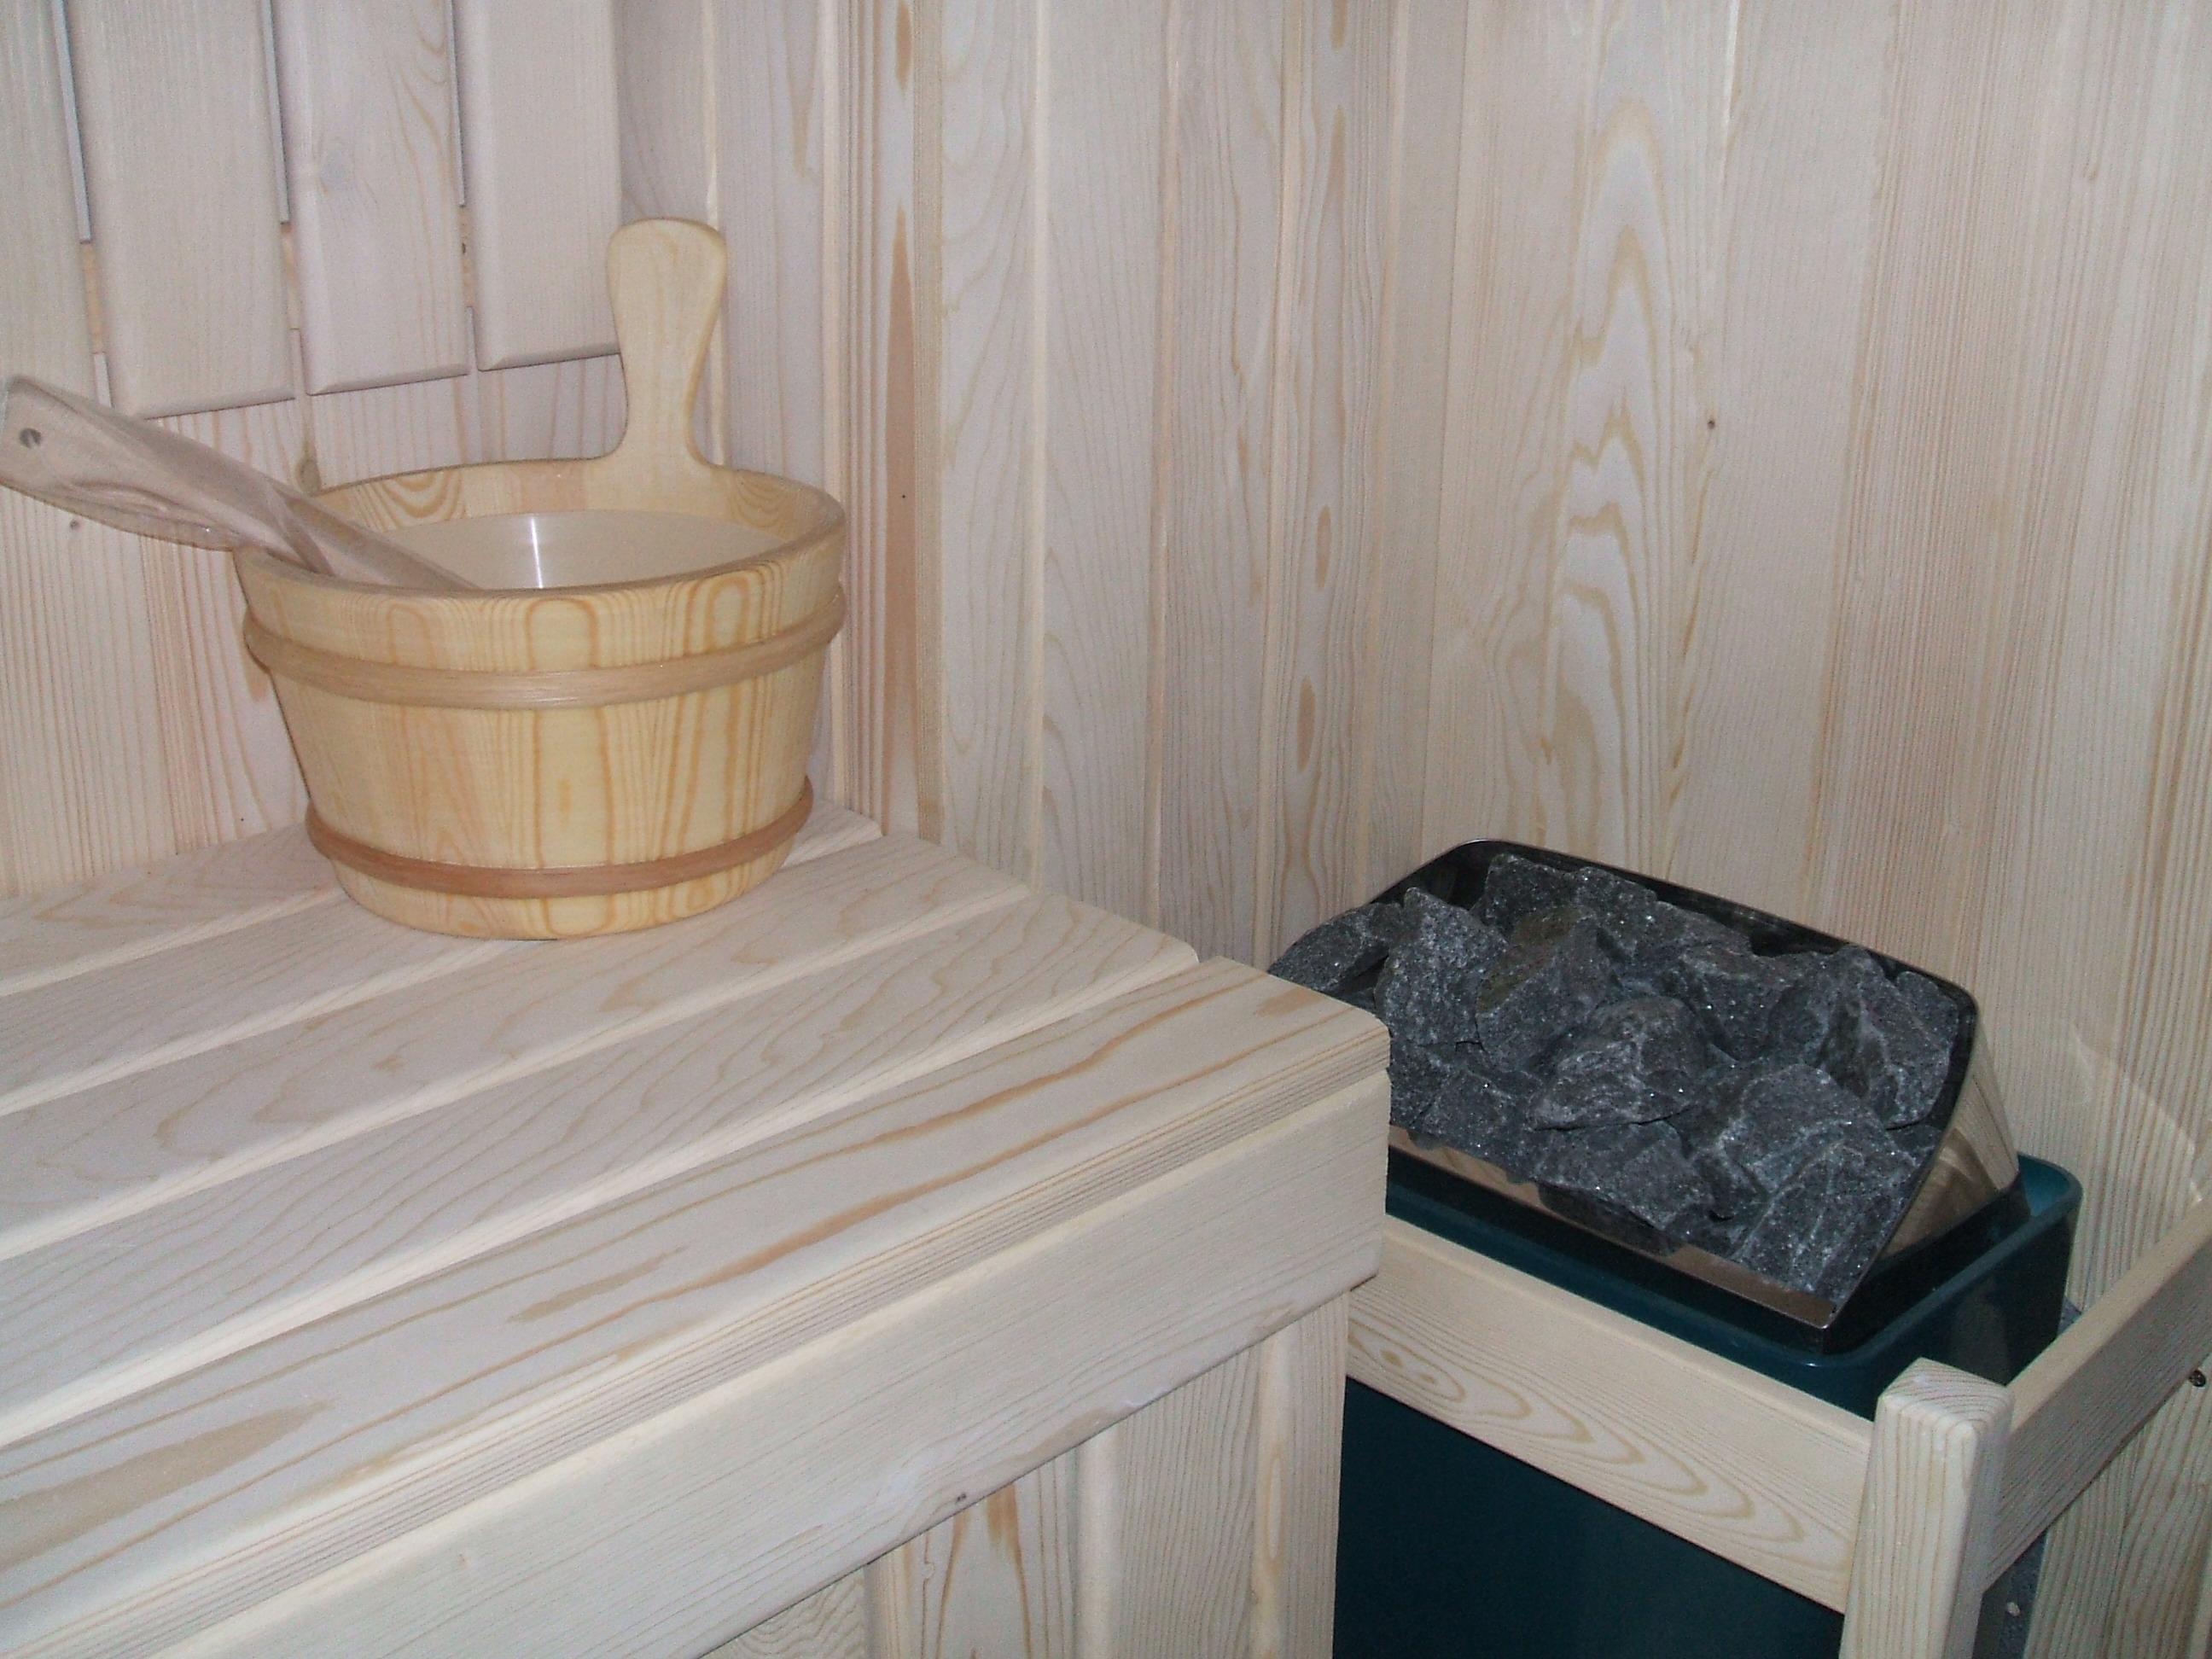 Incalzitor pentru saune - HOBBIT CONCEPT - Sauna MUST HAVE - ul sezonului! - Stire HOBBOT